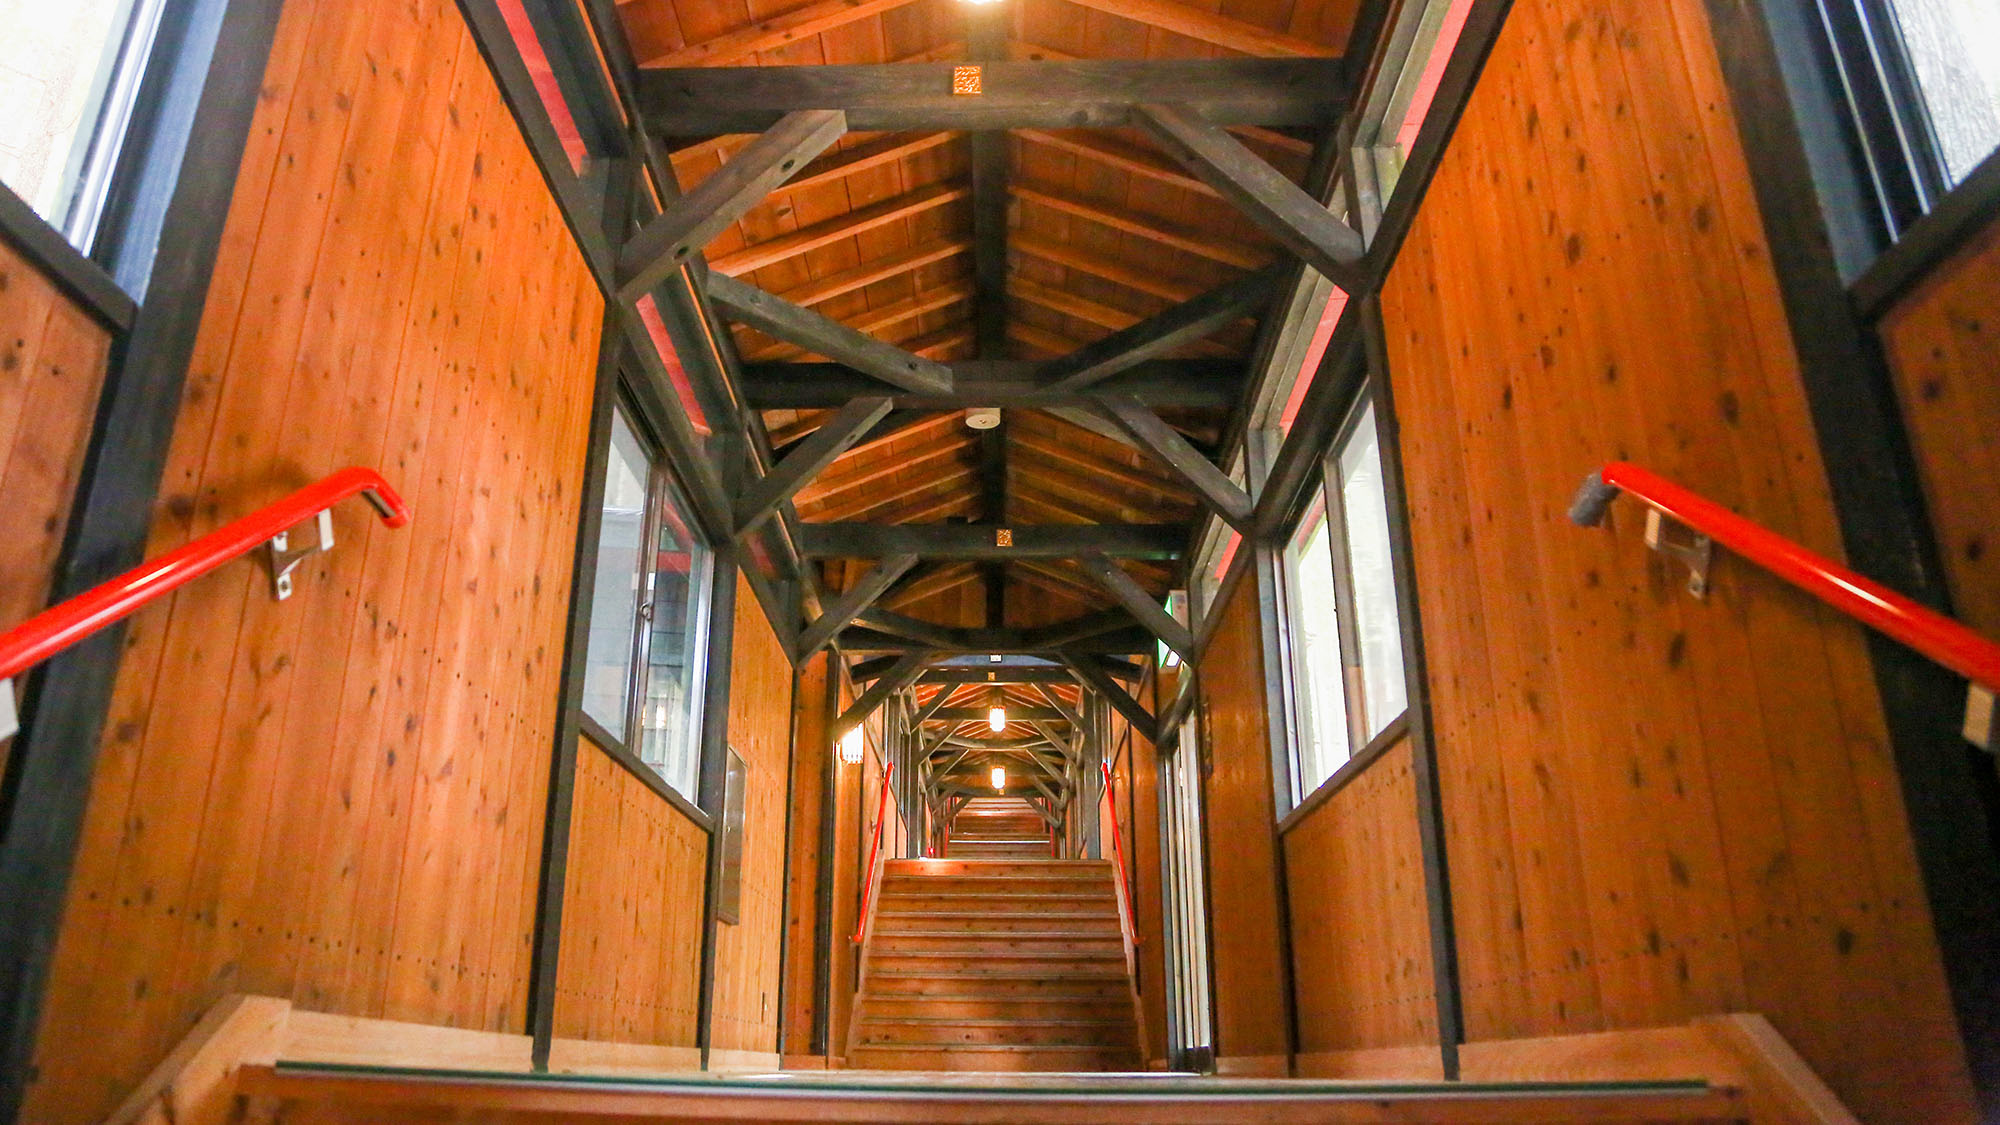 ・【宿泊棟】3階建ての延べ116段の木製の長い階段が印象的